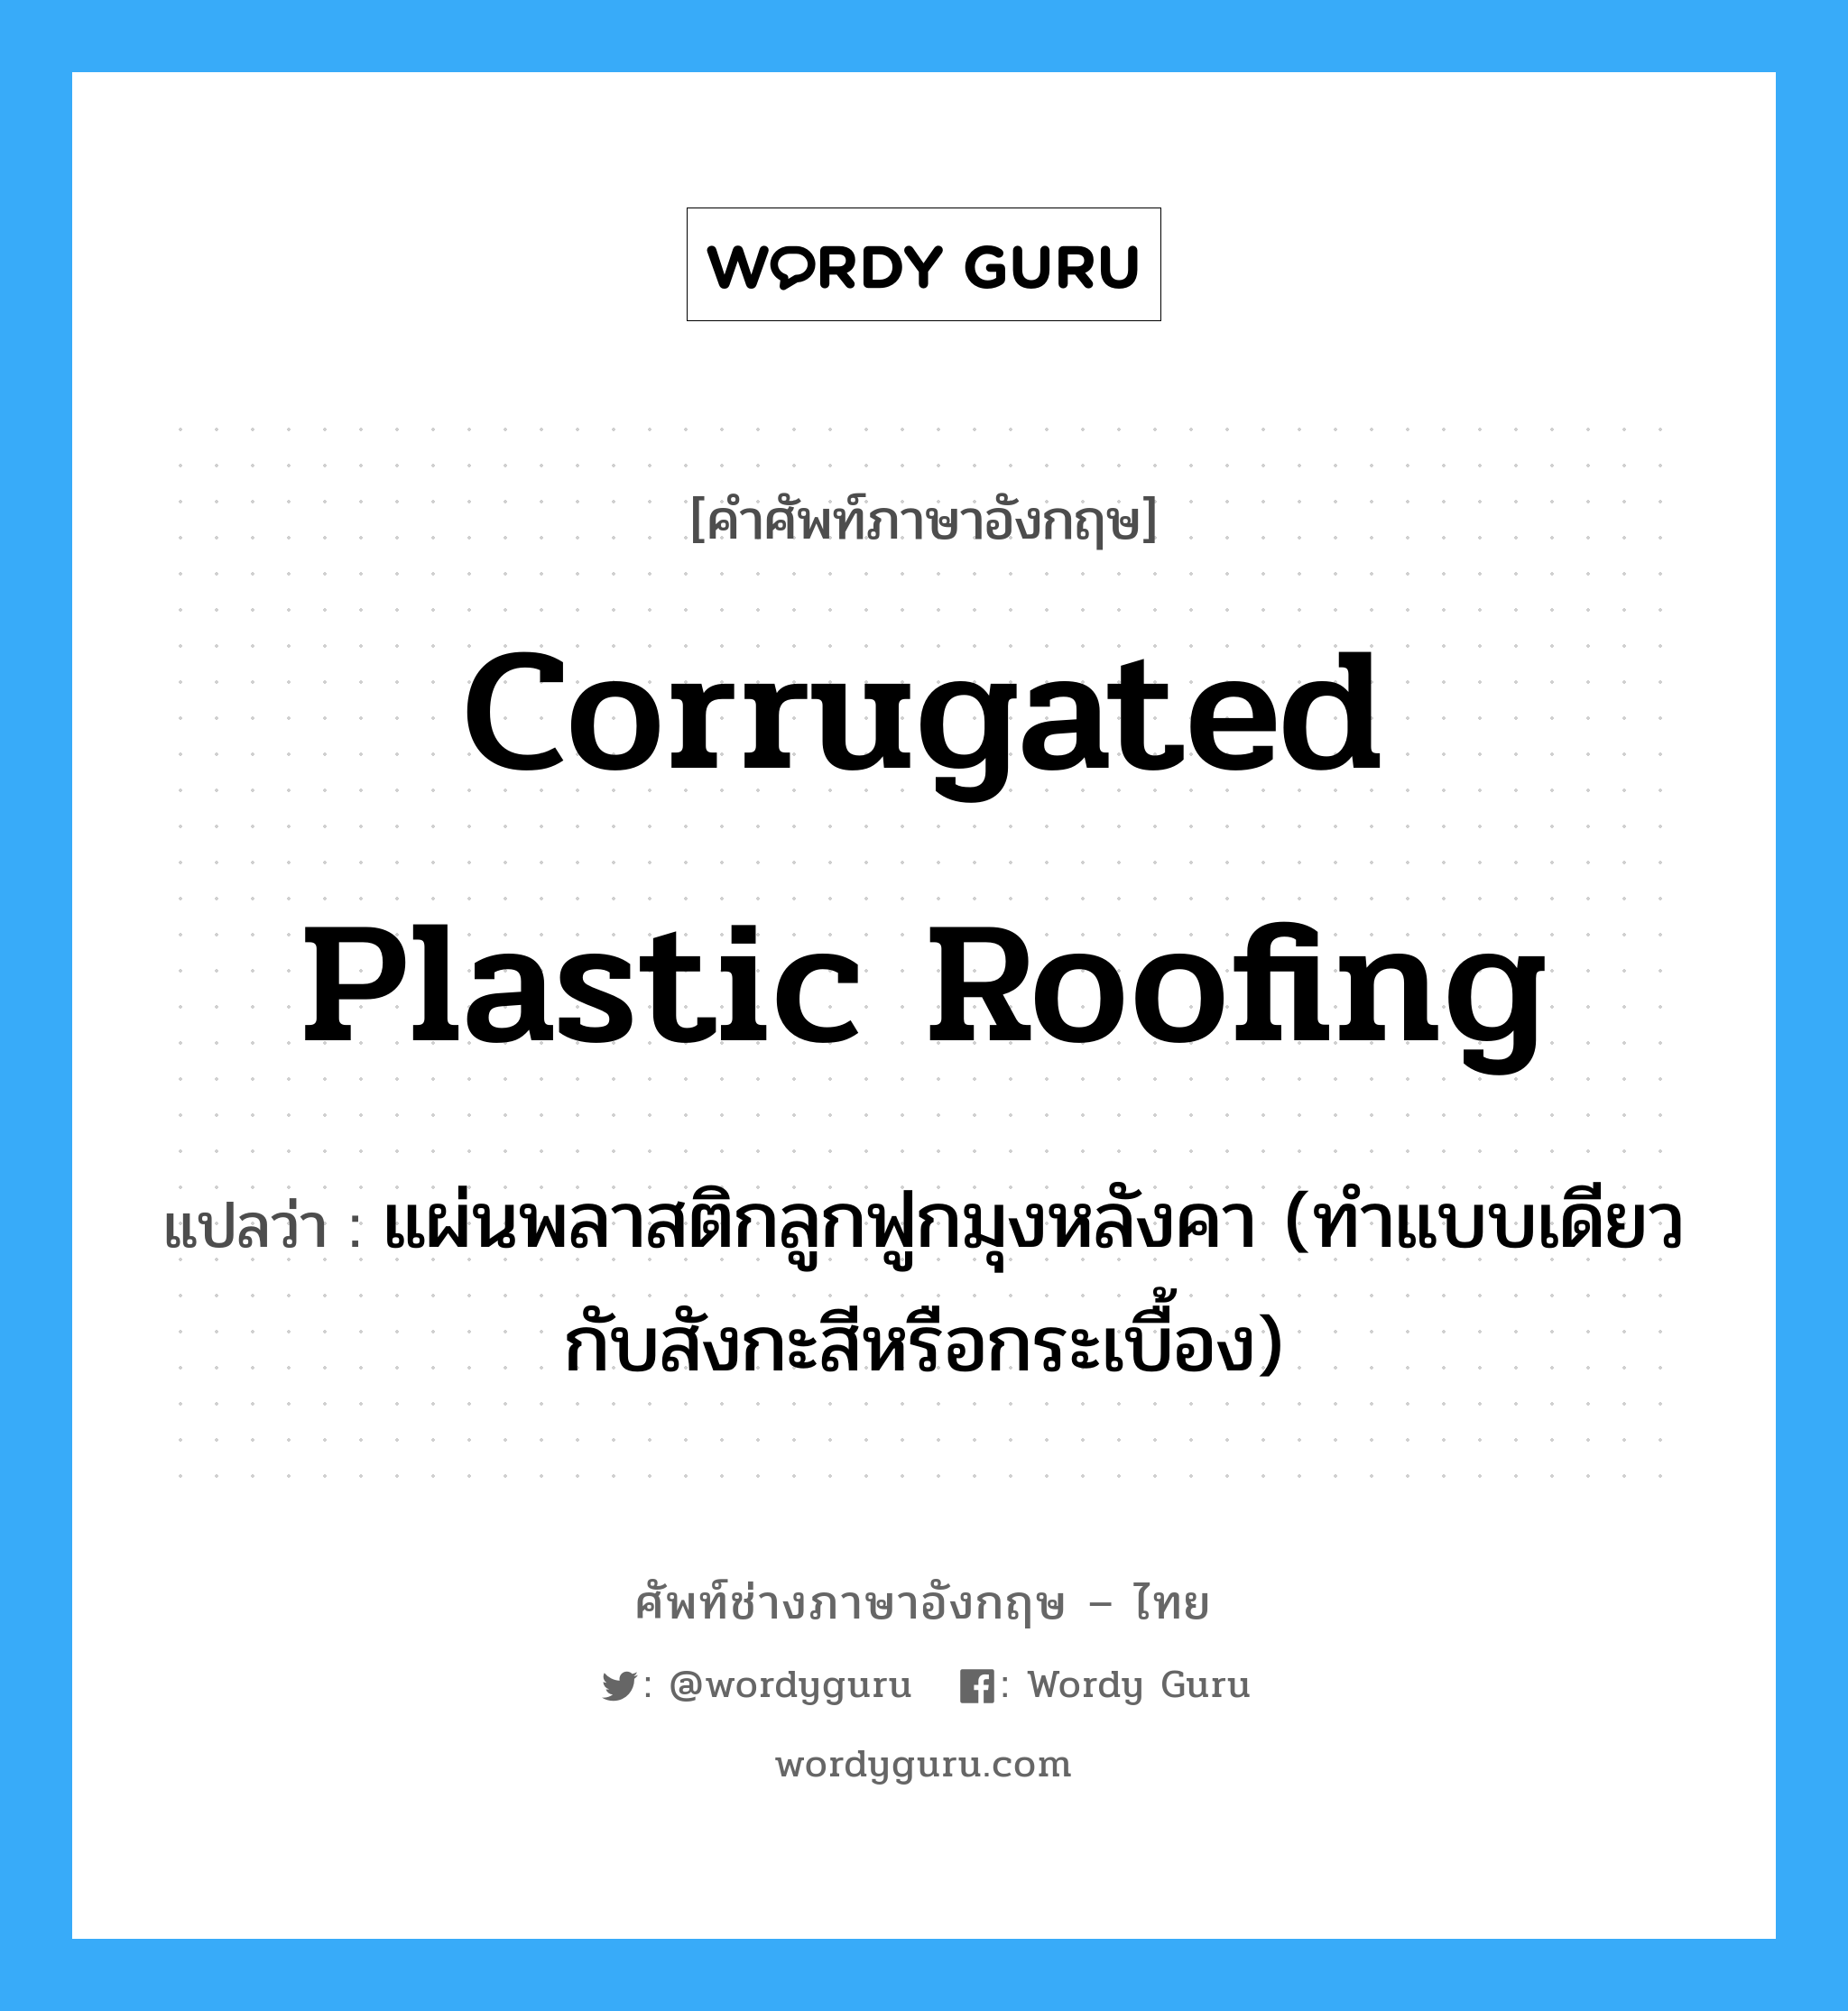 corrugated plastic roofing แปลว่า?, คำศัพท์ช่างภาษาอังกฤษ - ไทย corrugated plastic roofing คำศัพท์ภาษาอังกฤษ corrugated plastic roofing แปลว่า แผ่นพลาสติกลูกฟูกมุงหลังคา (ทำแบบเดียวกับสังกะสีหรือกระเบื้อง)